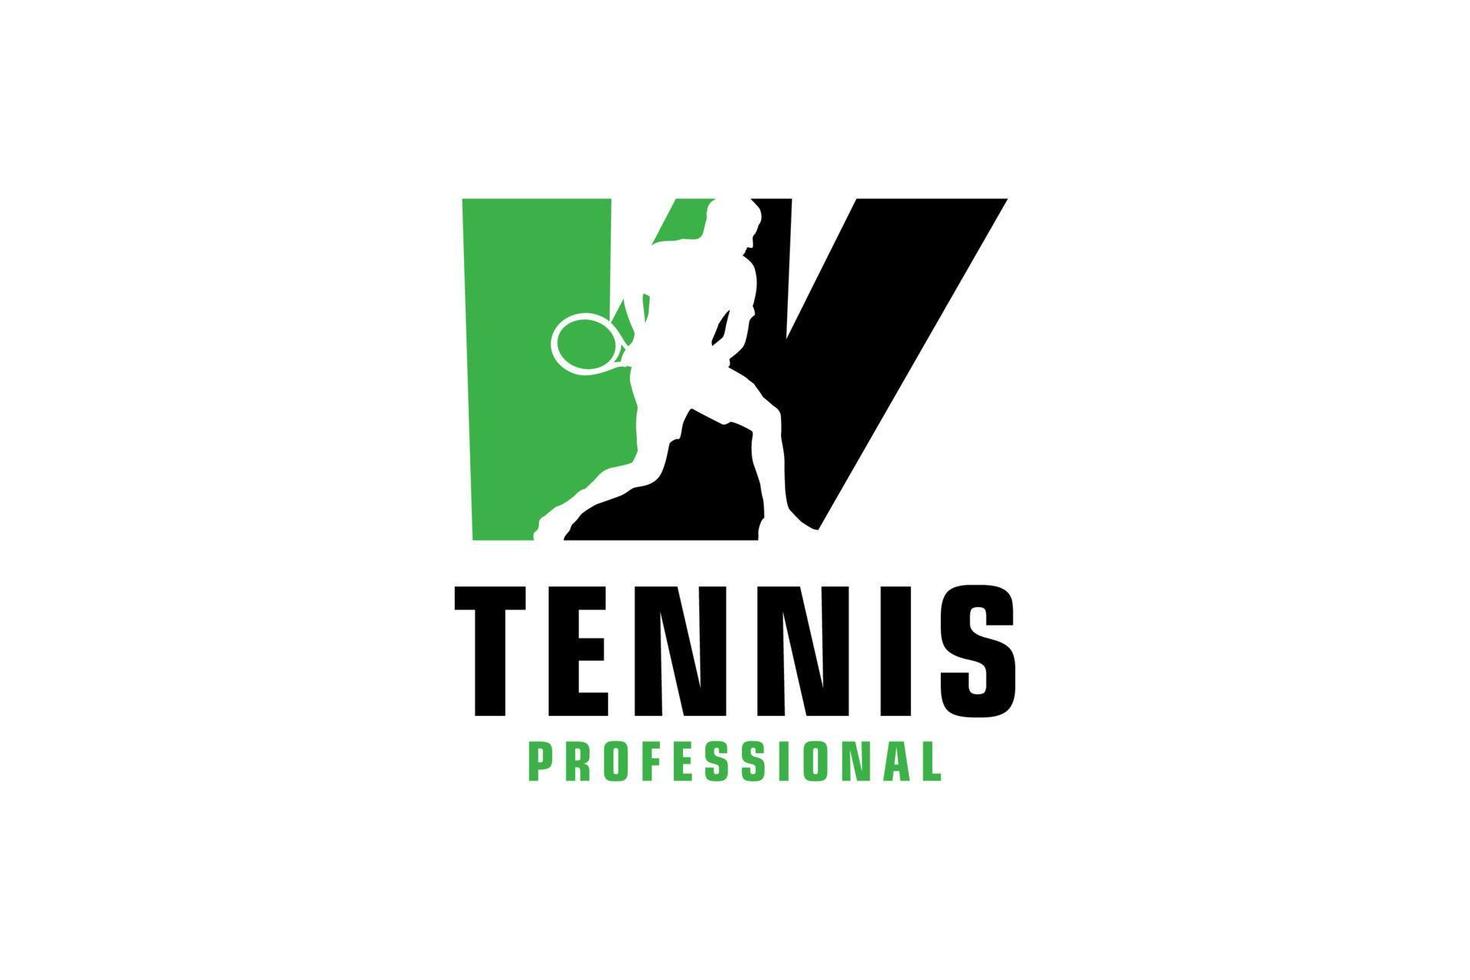 buchstabe w mit tennisspieler-silhouette-logo-design. Vektordesign-Vorlagenelemente für Sportteams oder Corporate Identity. vektor